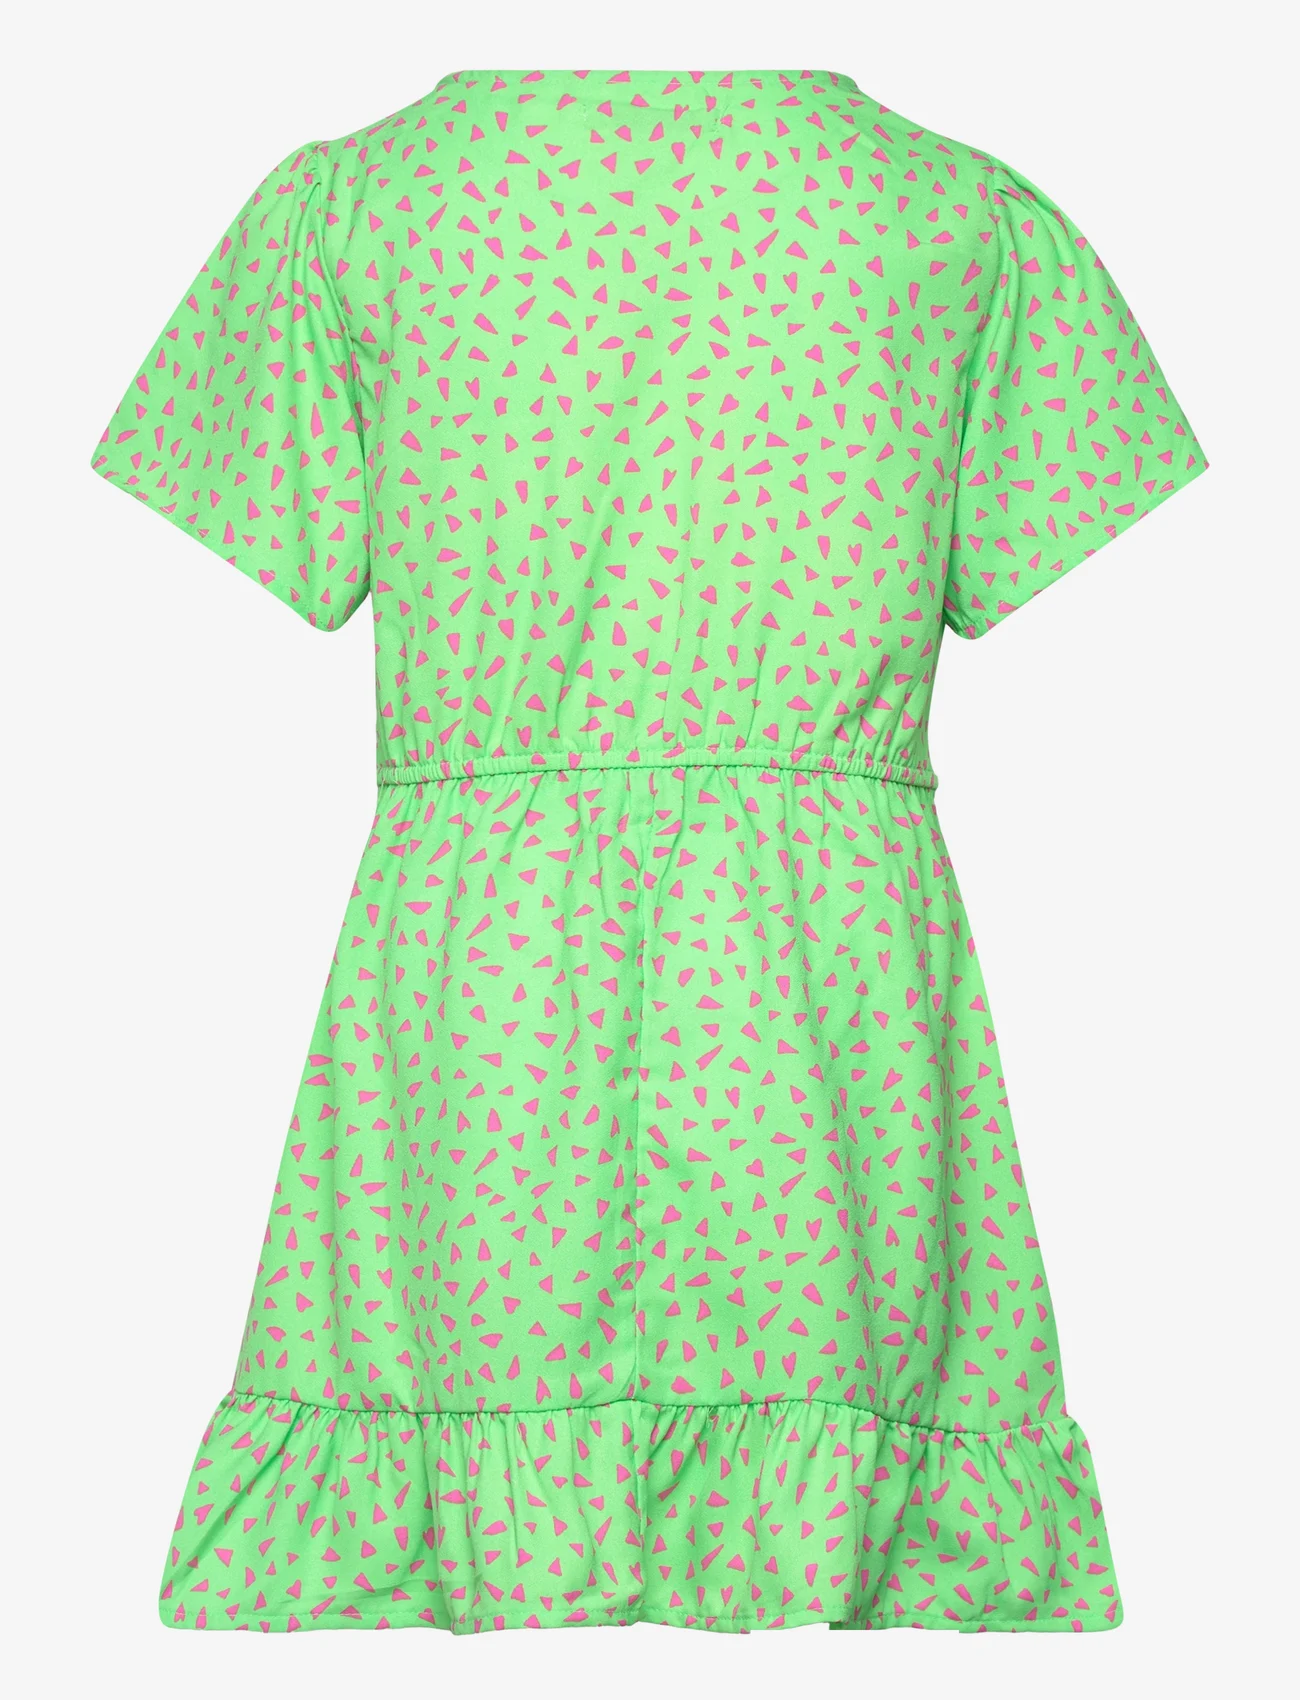 Kids Only - KOGLINO S/S AOP BELT DRESS PTM - kurzärmelige freizeitkleider - summer green - 1